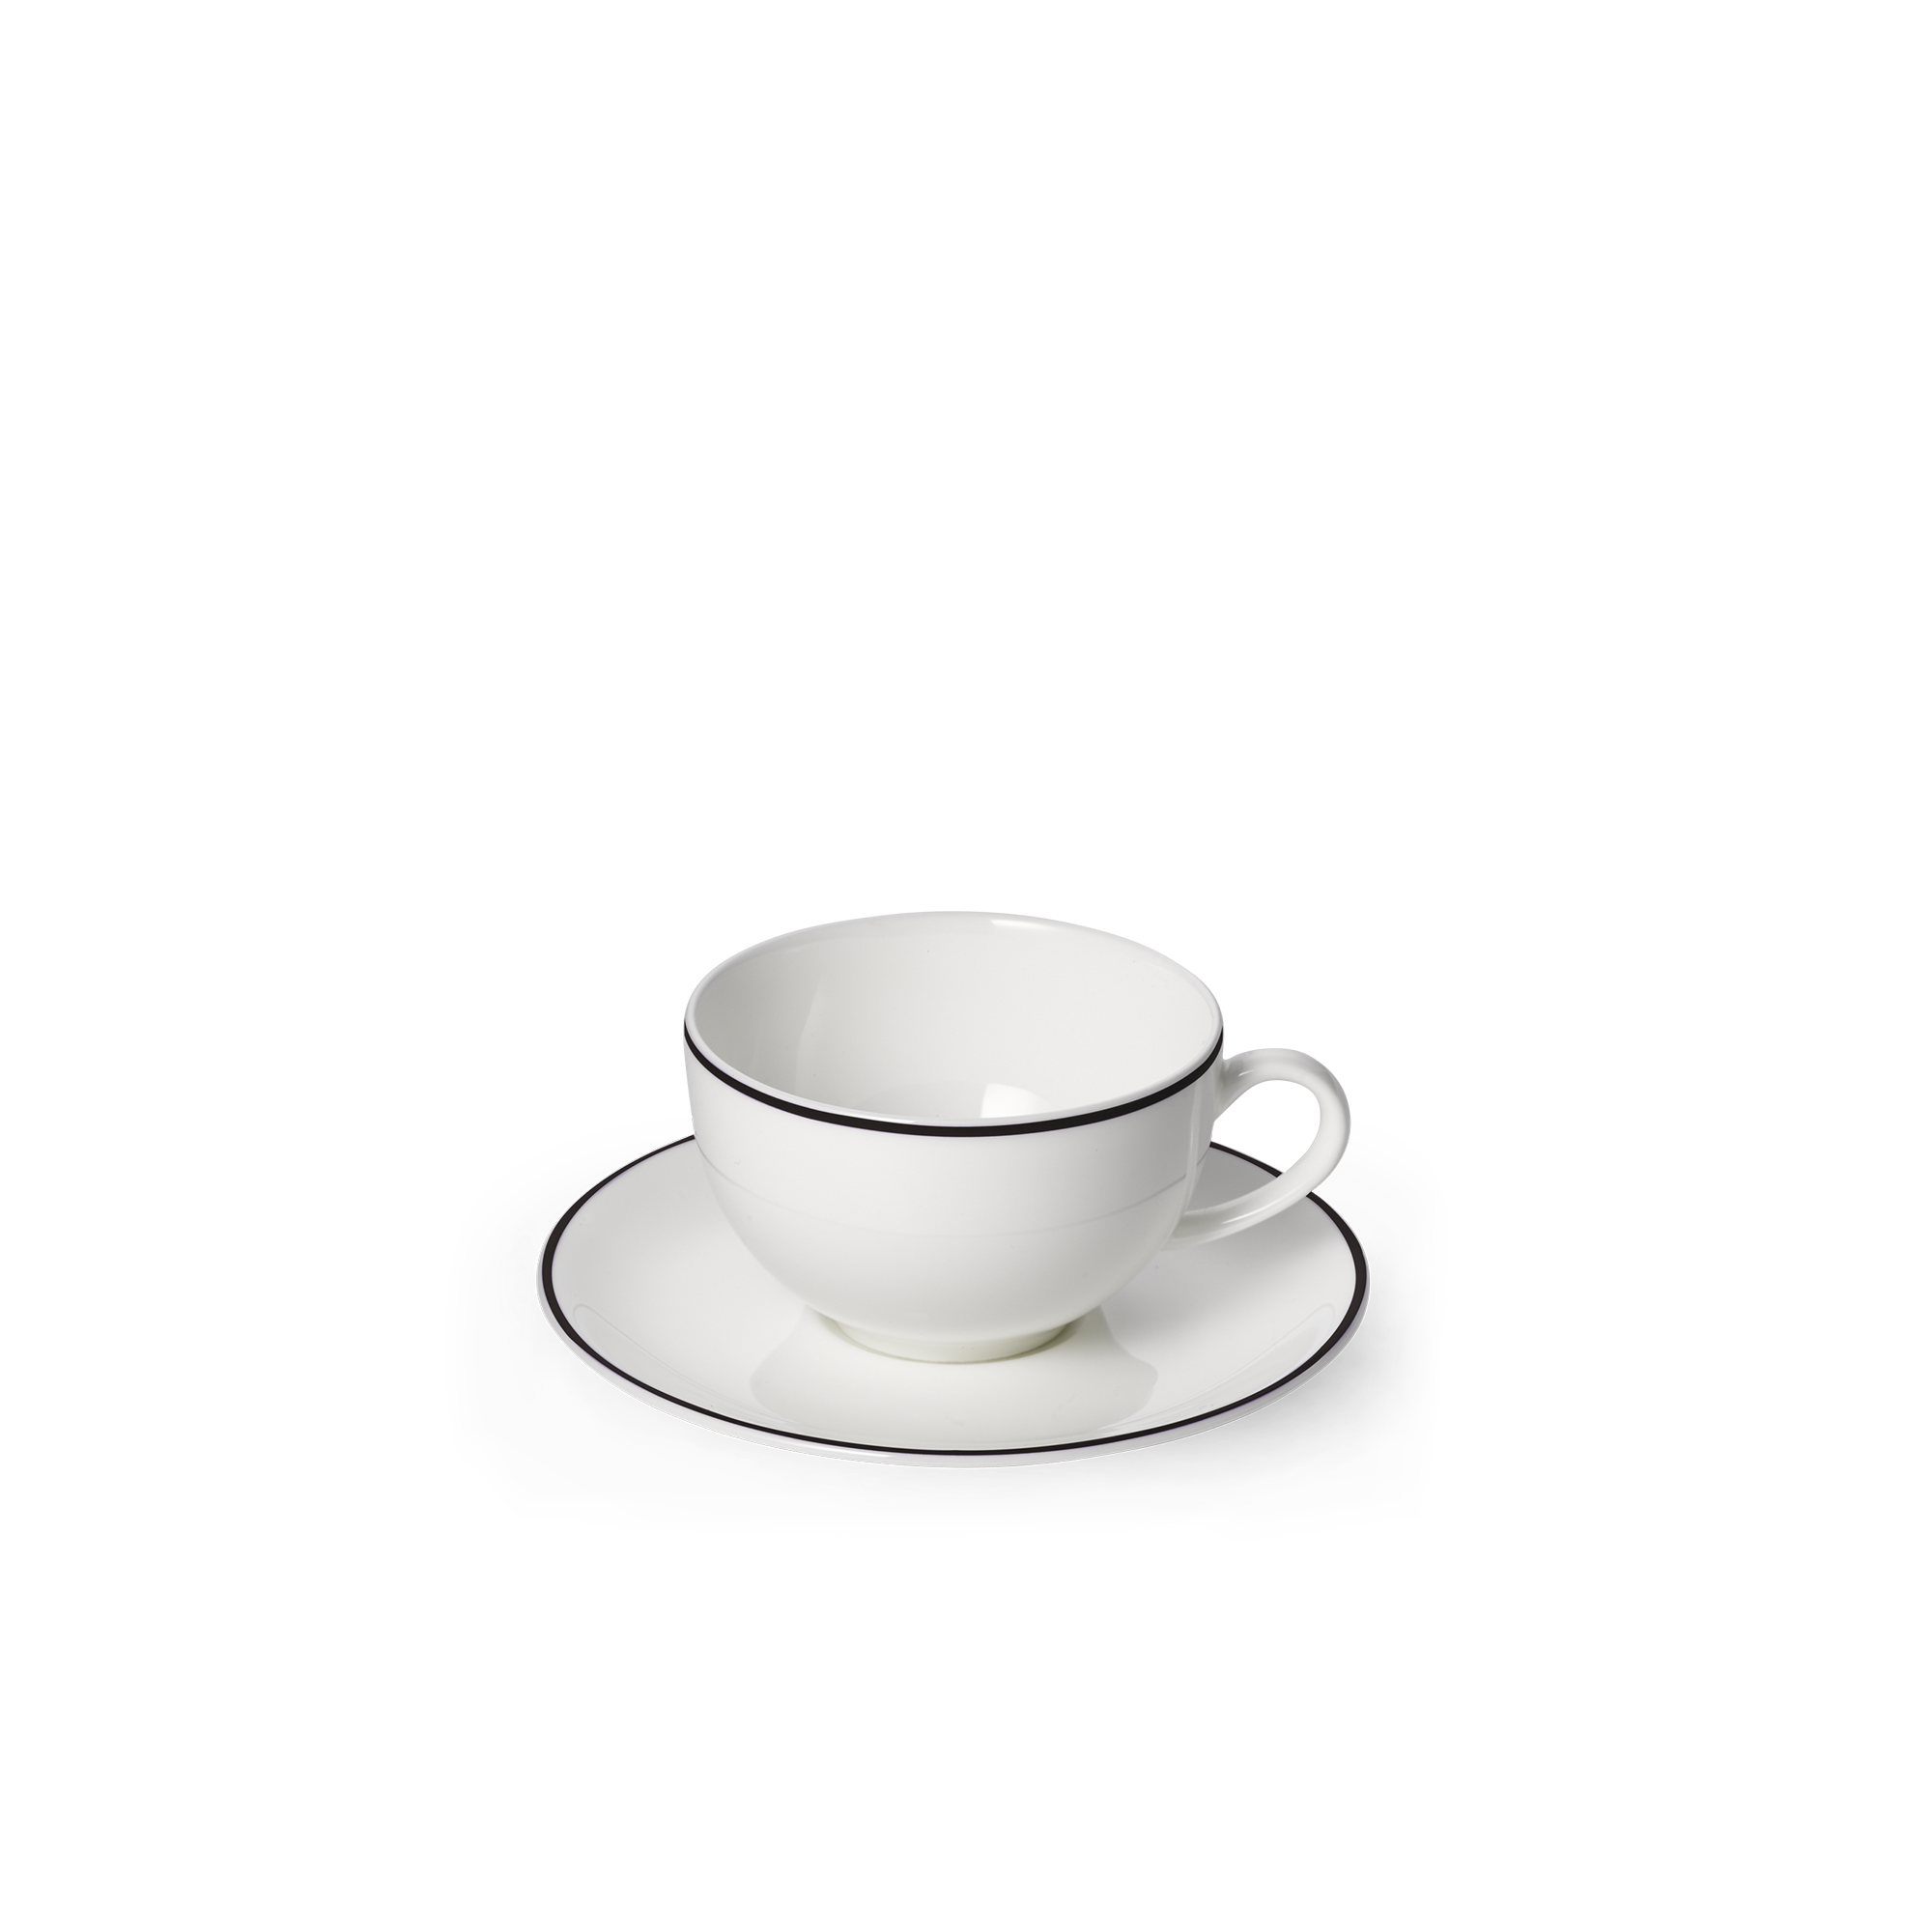 Simplicty black espresso cup